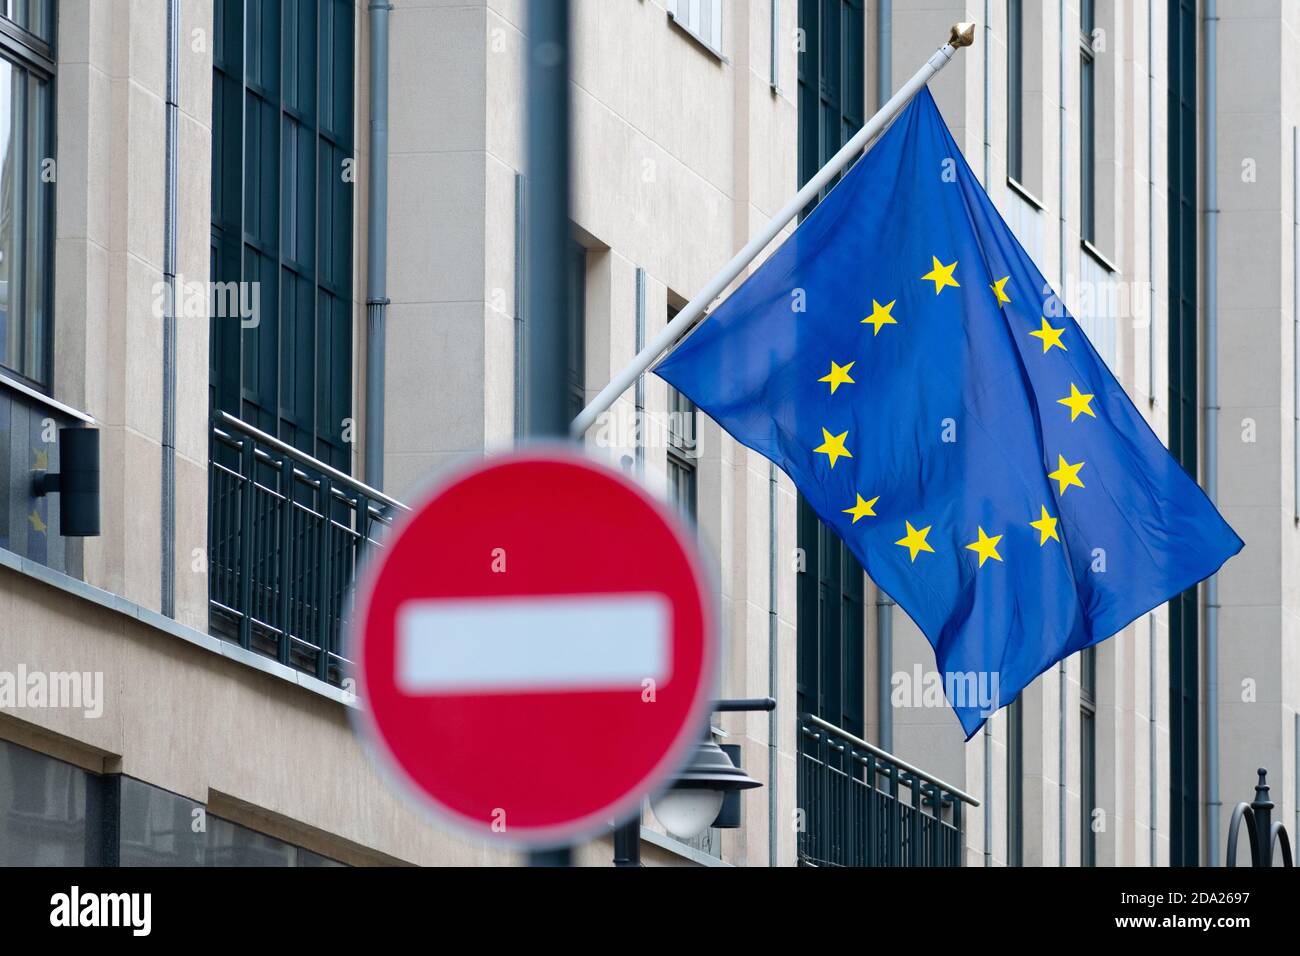 Flagge der Europäischen Union mit rot-weißer Warnung, kein Verkehrsschild, Stopp, Verbotsschild Stockfoto